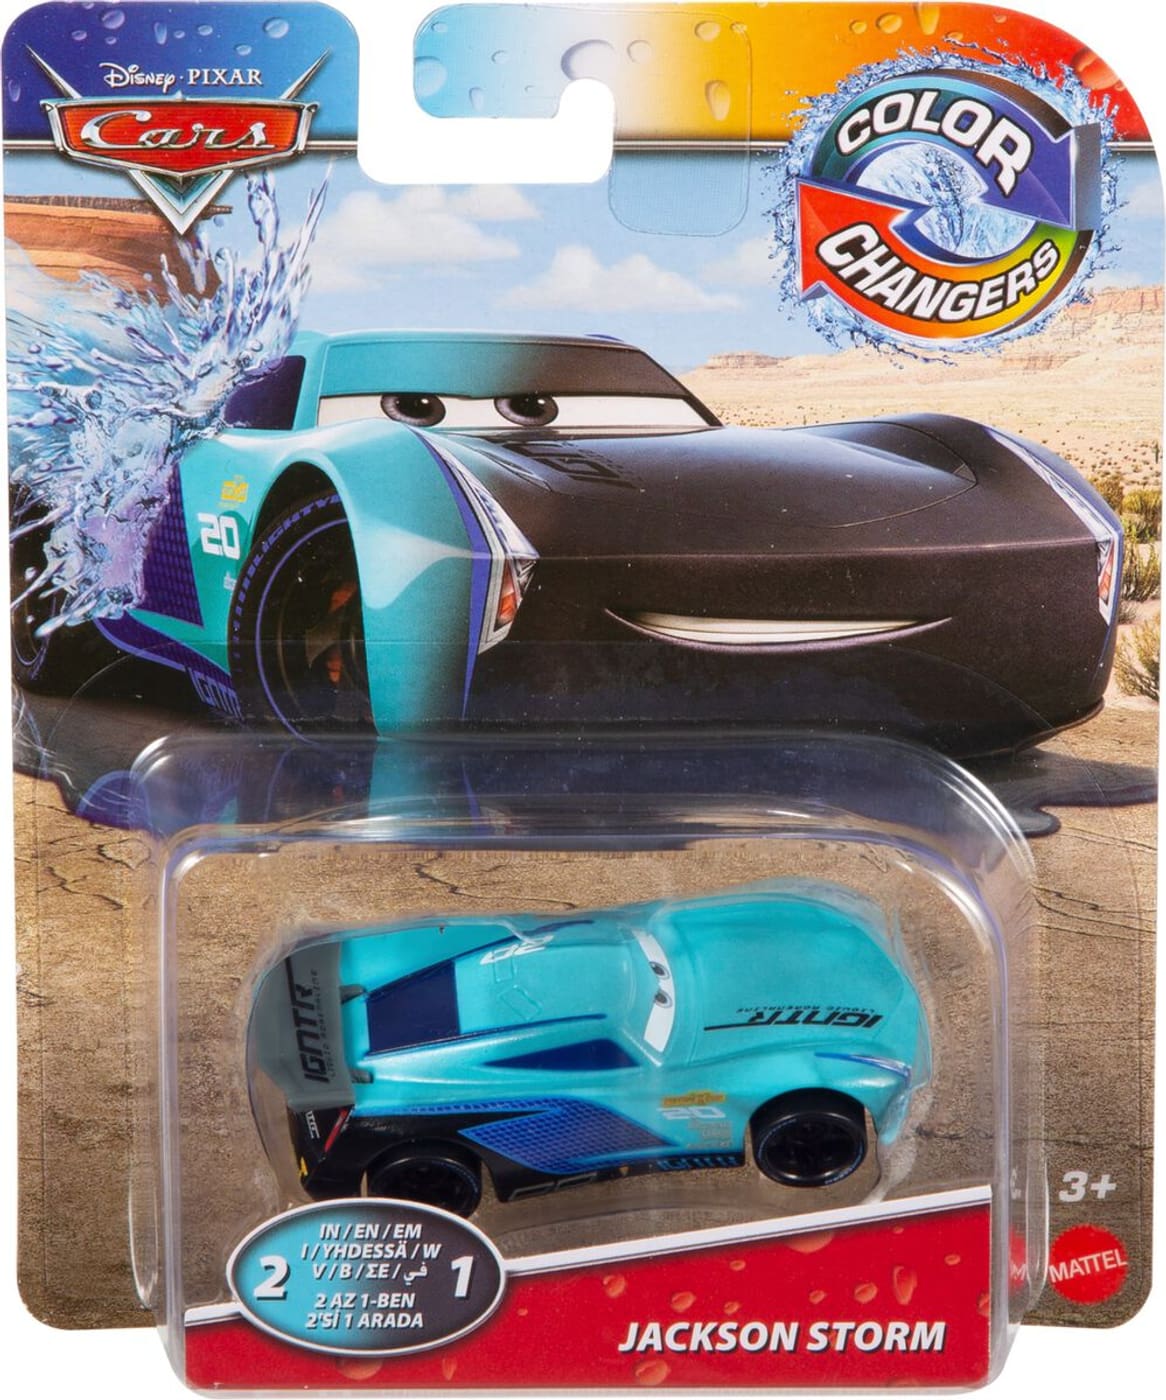 Mattel Disney Pixar Cars Gny94 Color Change Maquettes De Voiture Migros